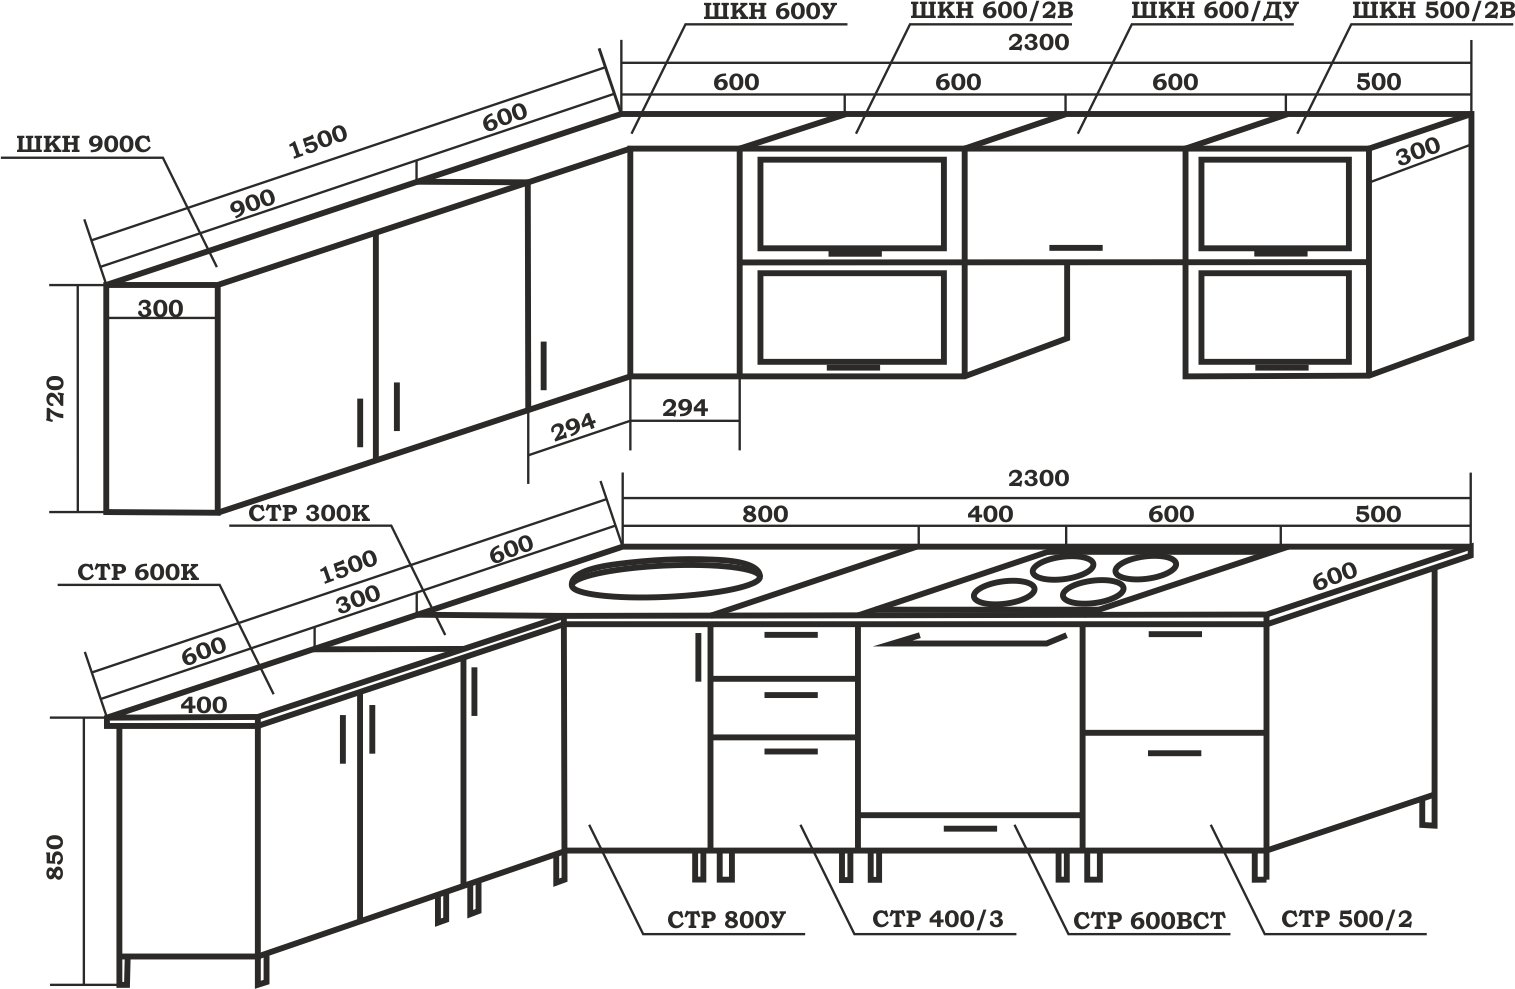 Размеры деталей кухонных шкафов для распила